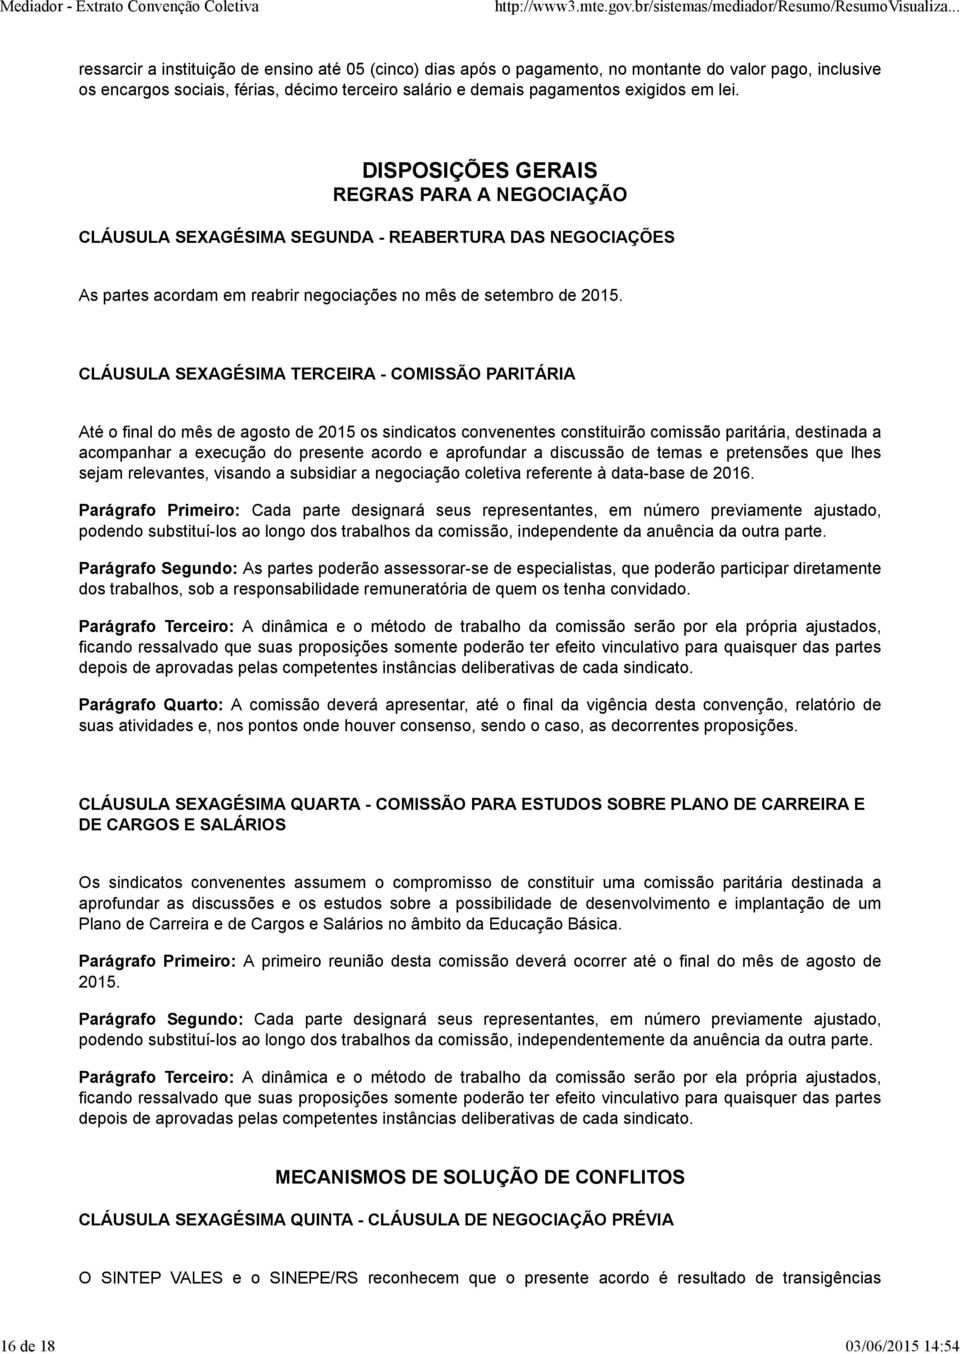 CLÁUSULA SEXAGÉSIMA TERCEIRA - COMISSÃO PARITÁRIA Até o final do mês de agosto de 2015 os sindicatos convenentes constituirão comissão paritária, destinada a acompanhar a execução do presente acordo